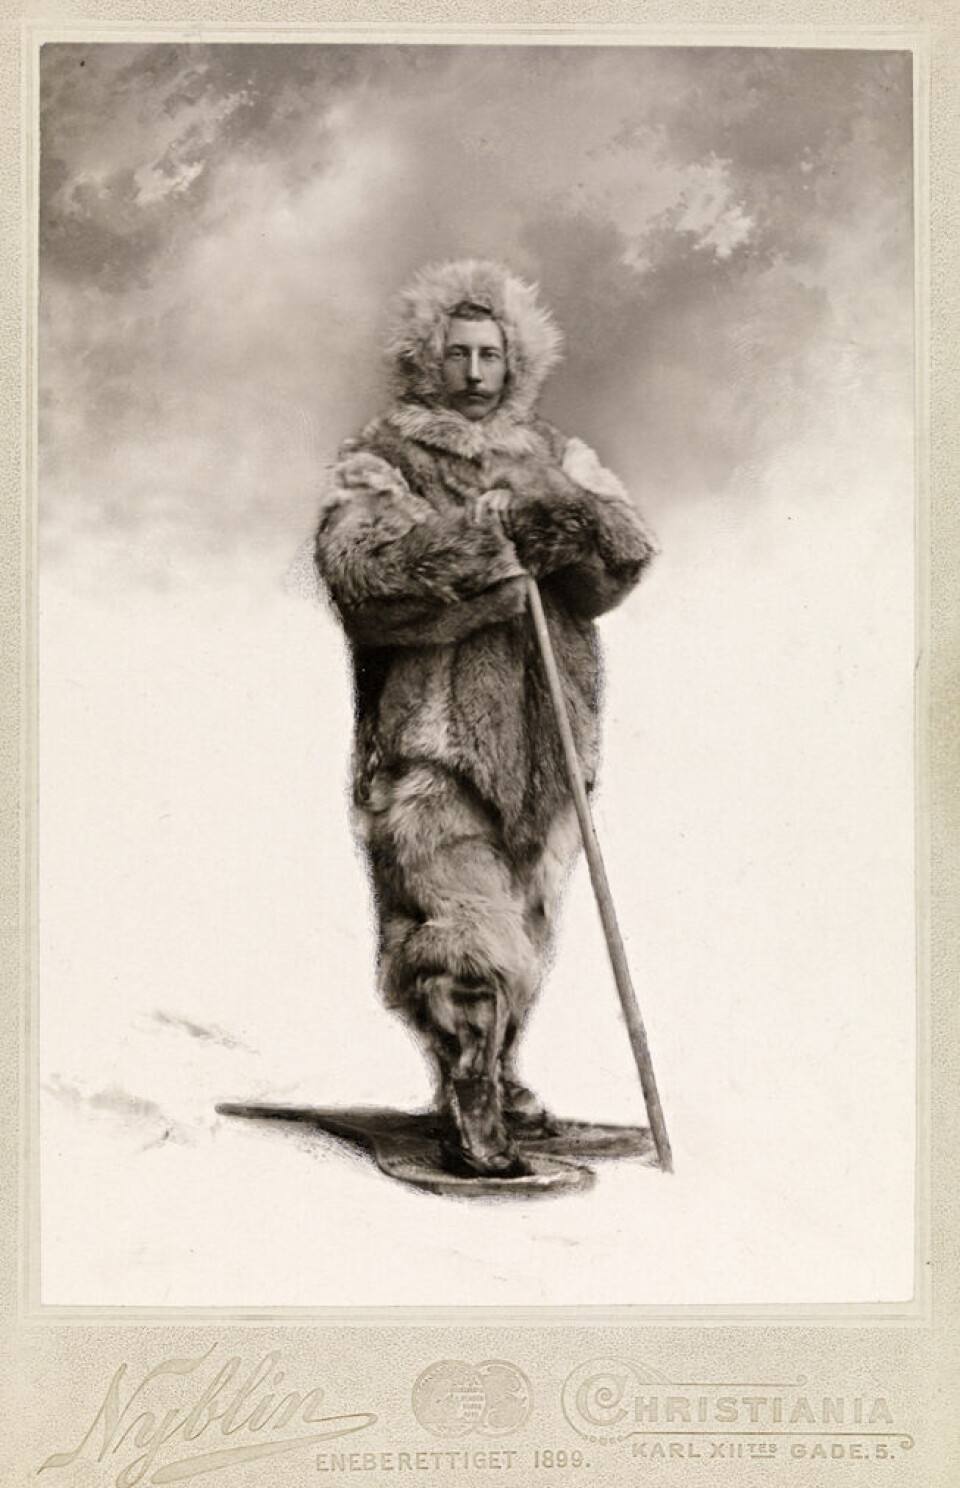 Roald Amundsen var en norsk polfarer. Han brukte tradisjonelle snøbriller på turene sine. Bildet er tatt i 1899.